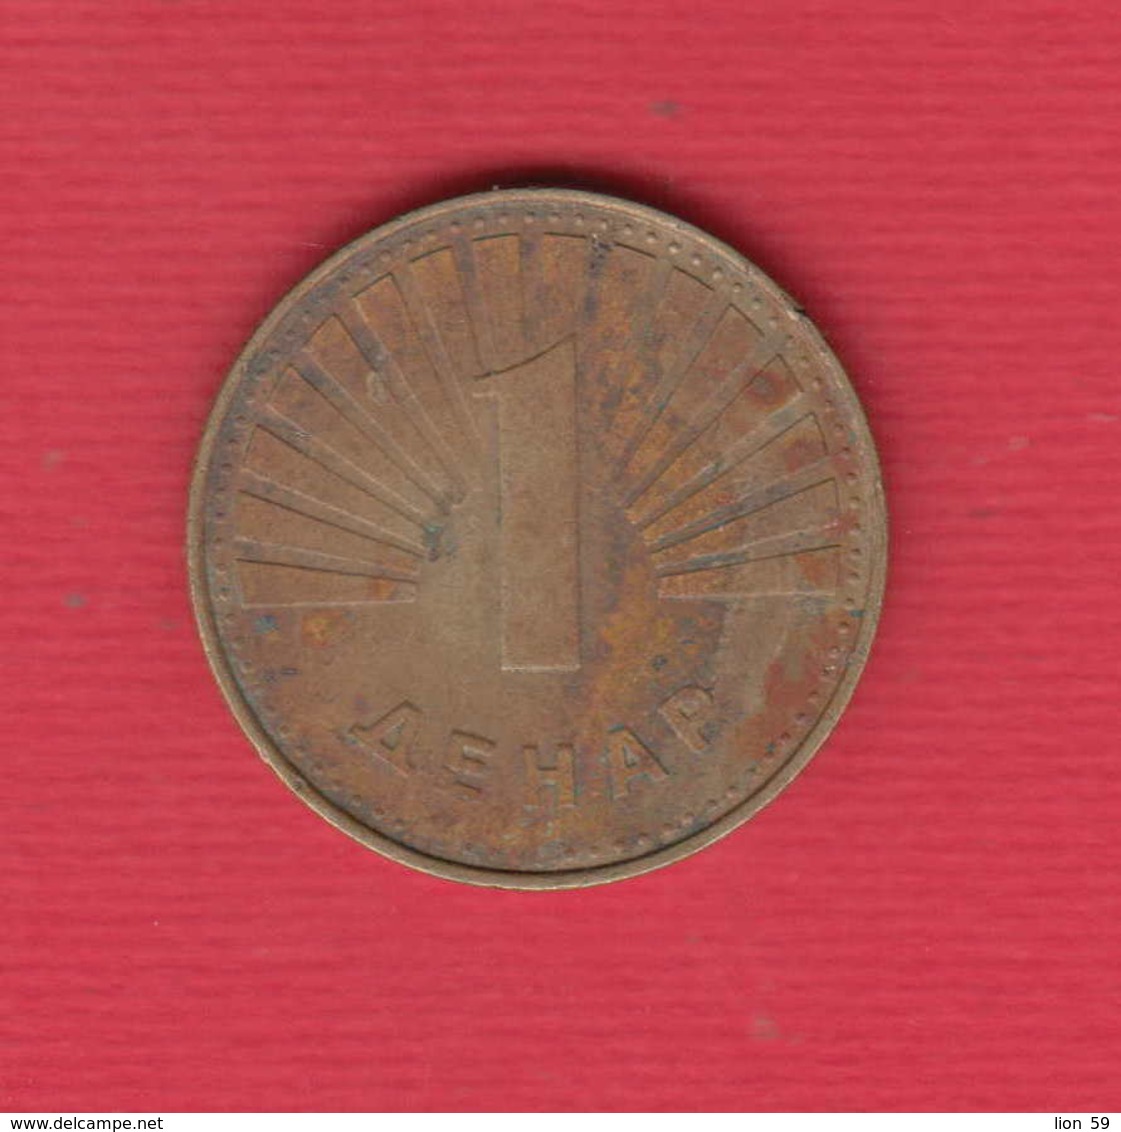 F7312  / - 1 Denar - 1993 -  Macedonia Macedoine Mazedonien - Coins Munzen Monnaies Monete - Macedonia Del Nord